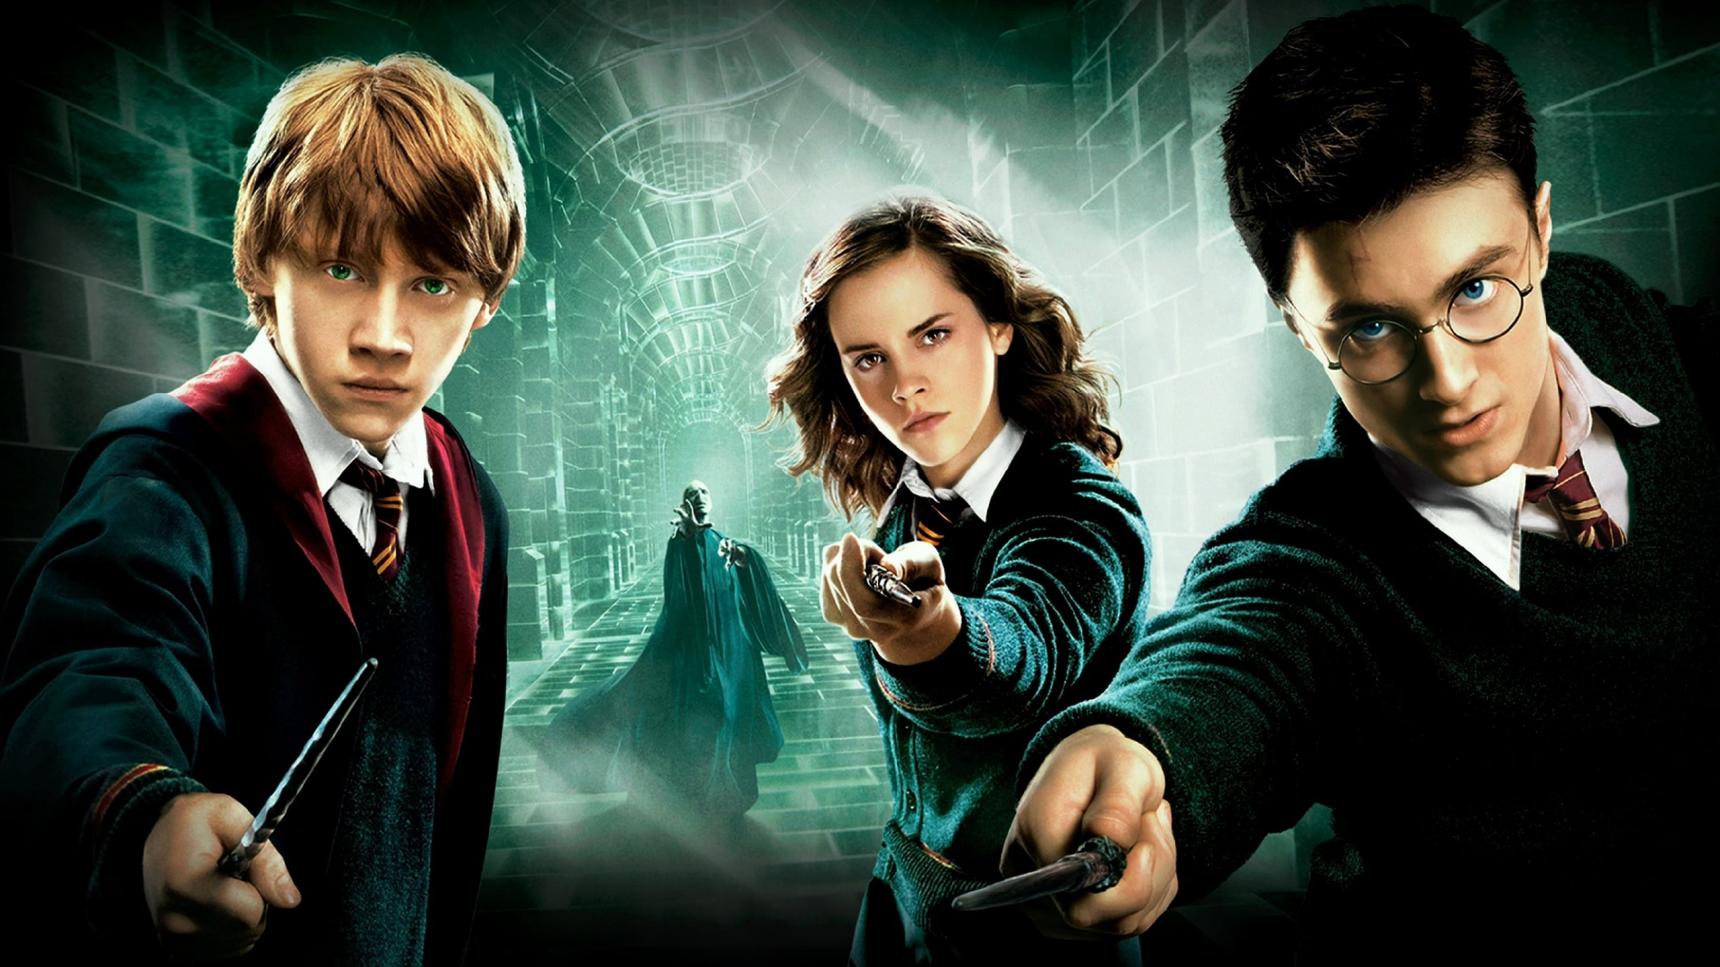 Fondo de pantalla de la película Harry Potter y la Orden del Fénix en Cuevana 3 gratis